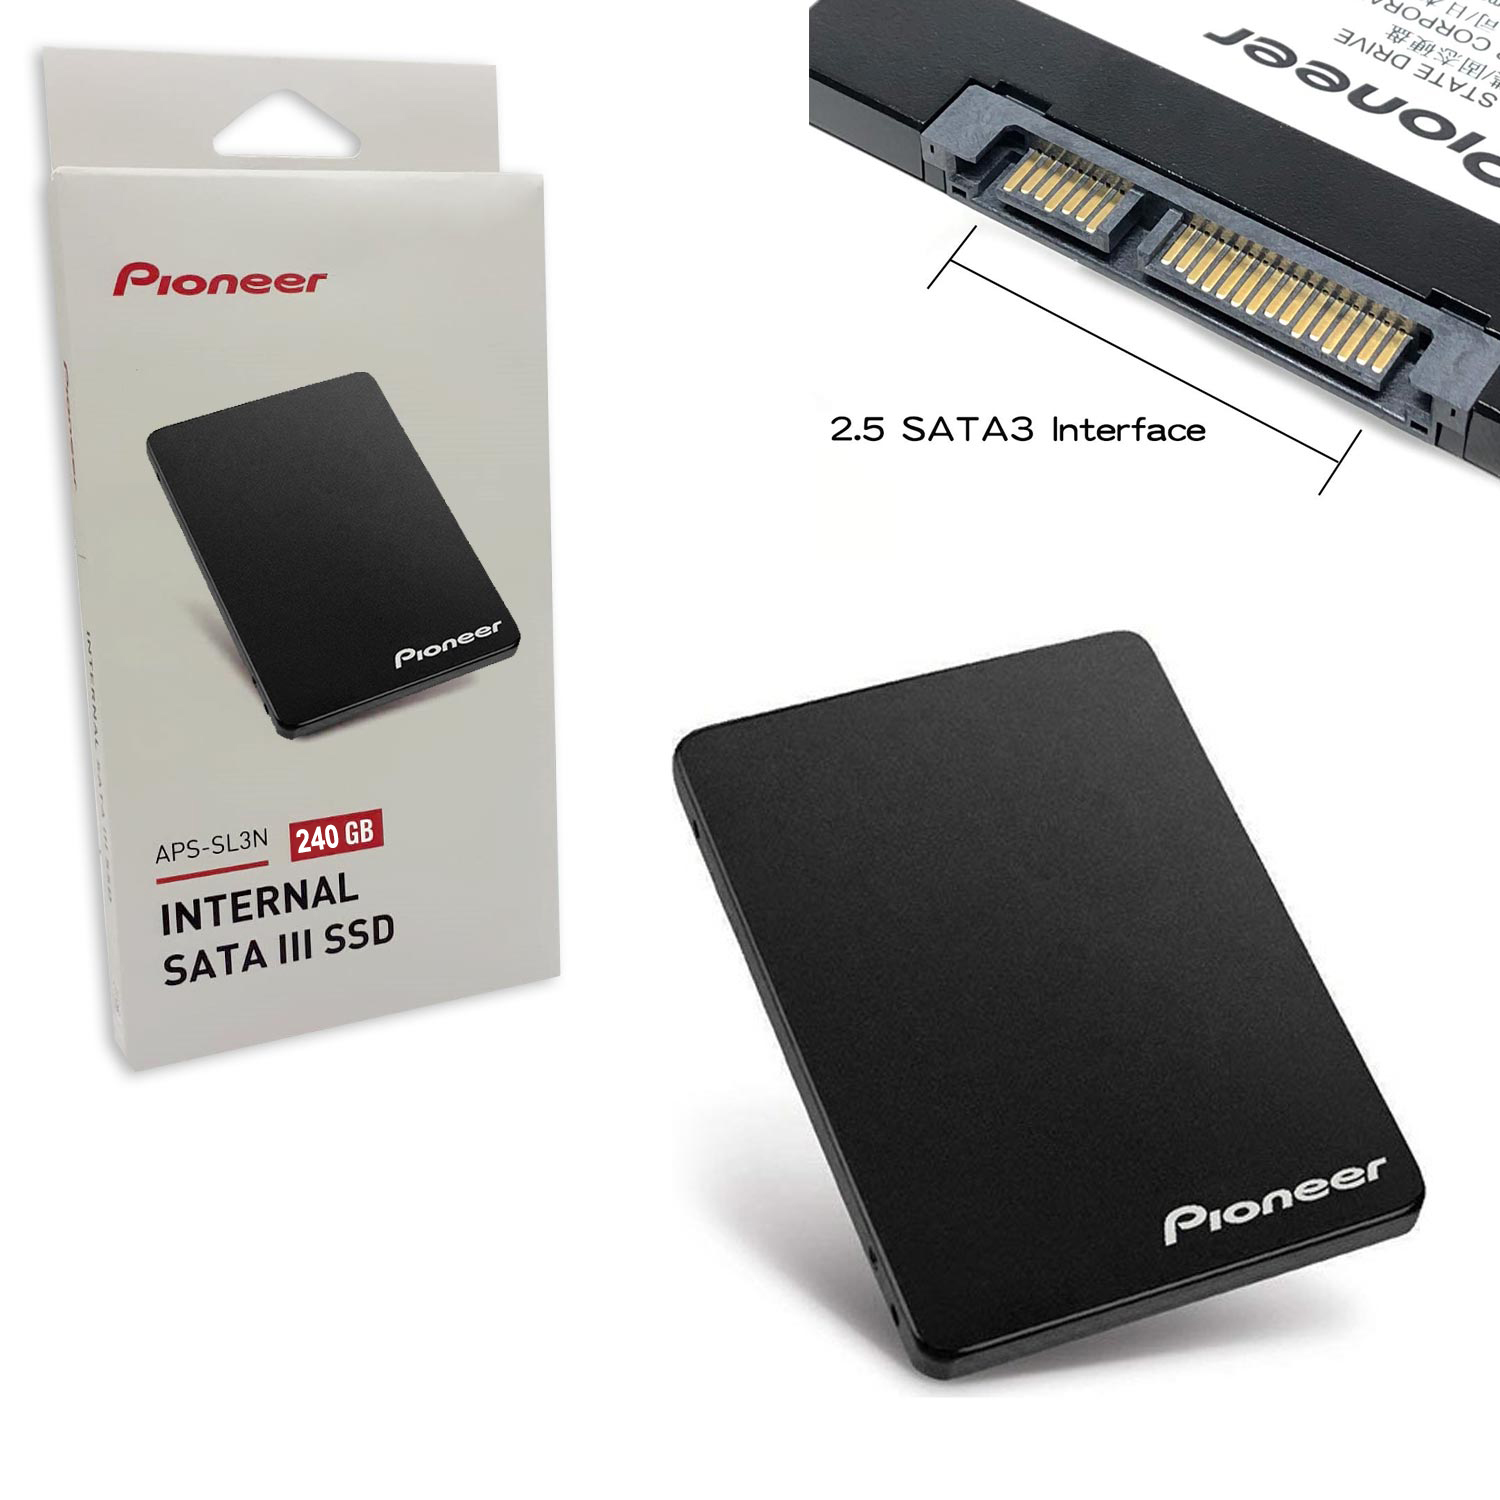 SSD 240GB 2.5 SATA 3 PIONEER APS-SL3N